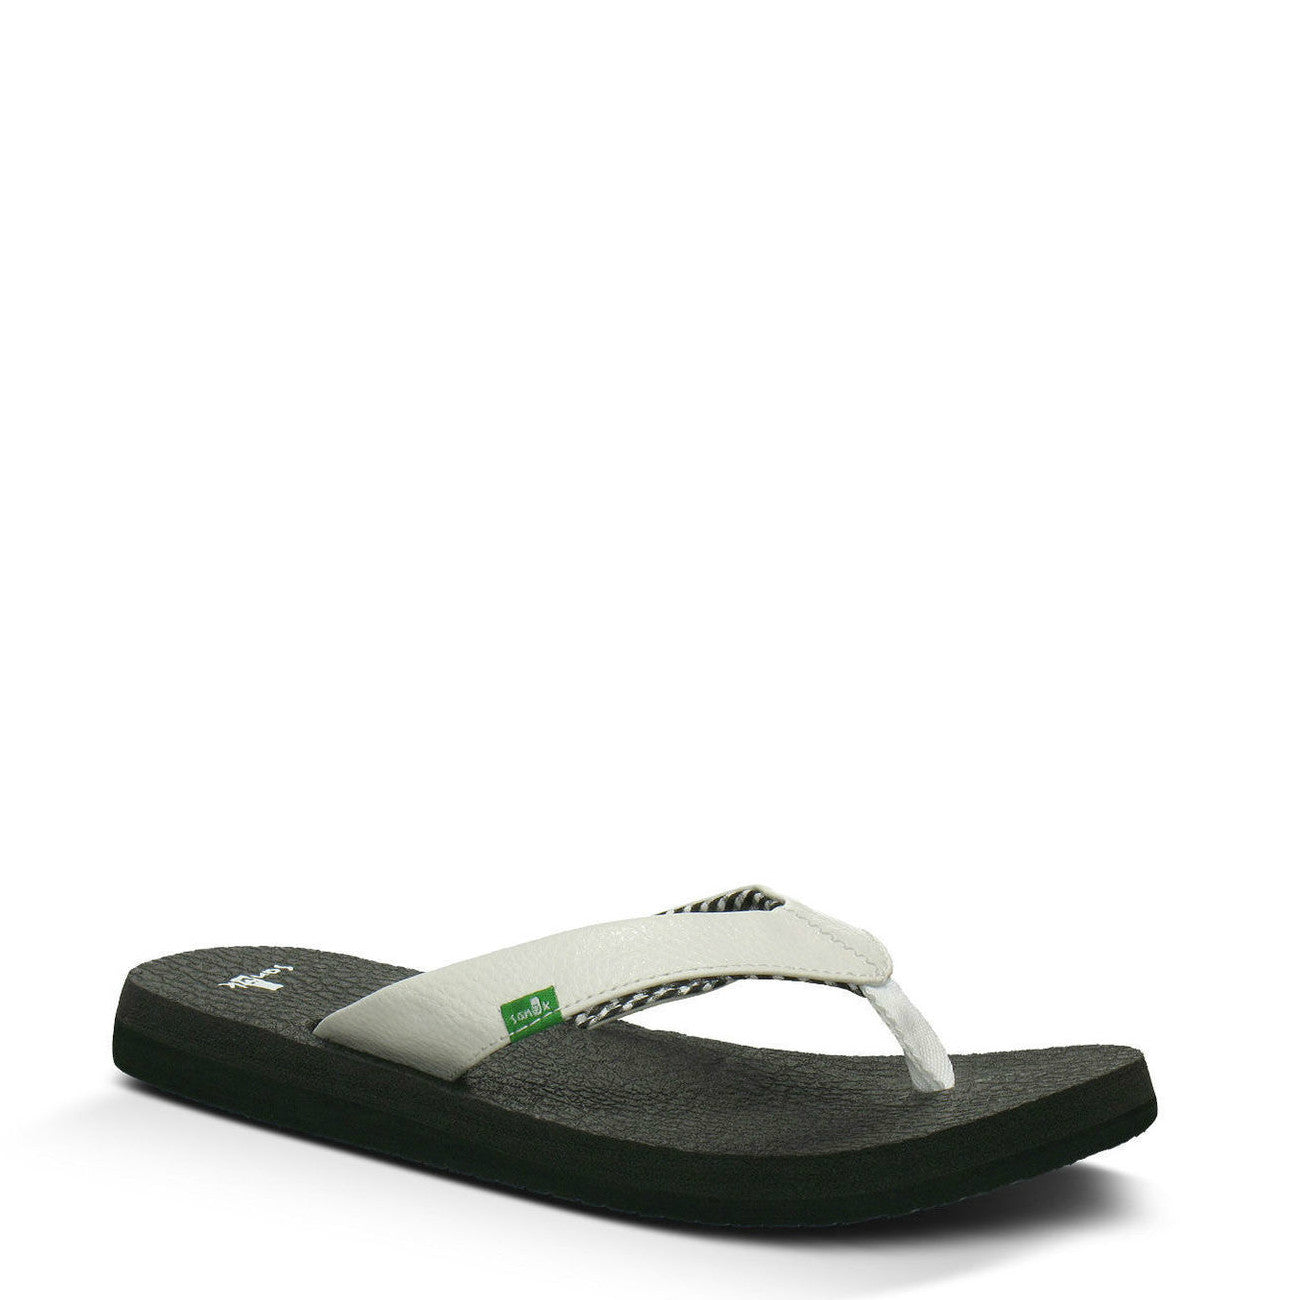 Sanuk Yoga Mat White Black Comfortable Women's Flip Flops Sandals